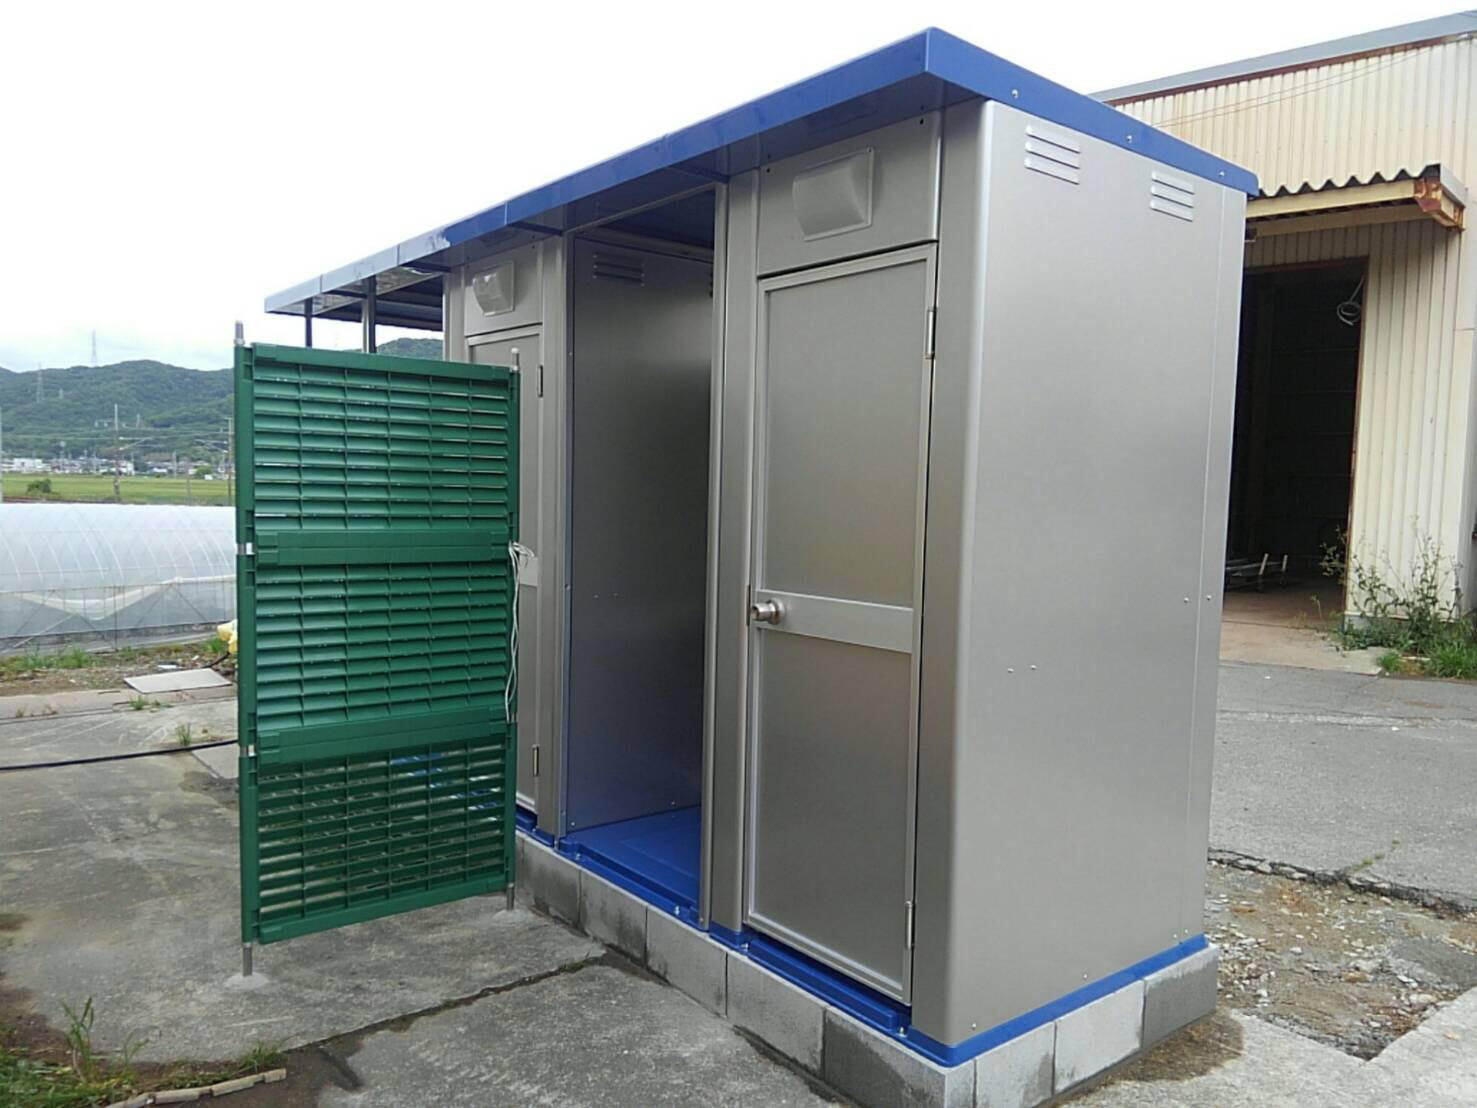 トイレ “ユニパール” 新棟販売 | 仮設トイレ・ユニットハウスのHINO